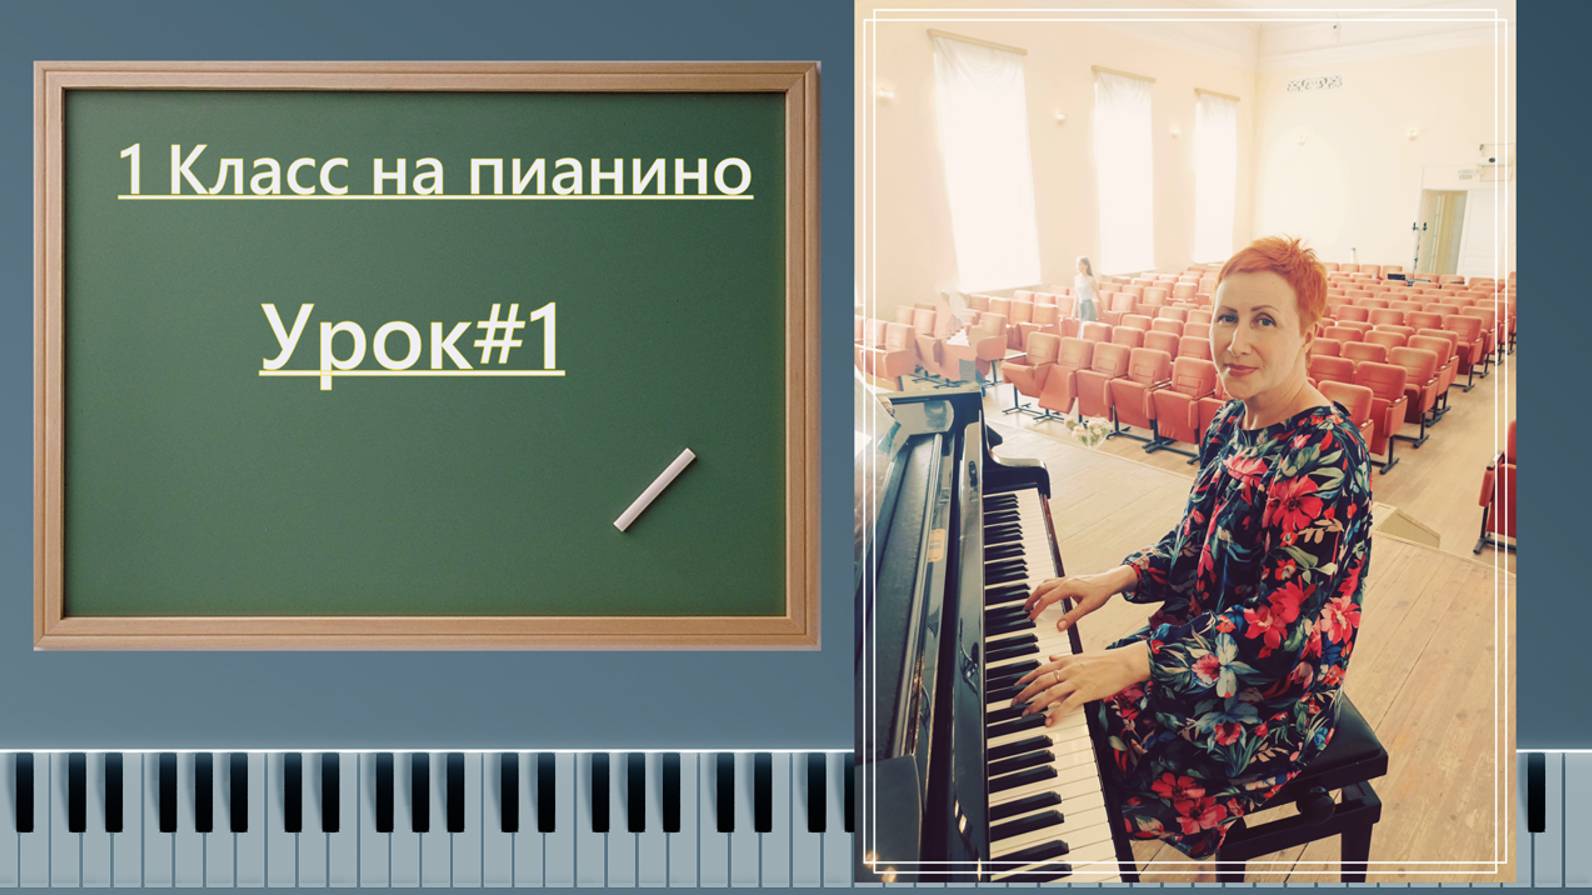 Первый класс на пианино | урок #1